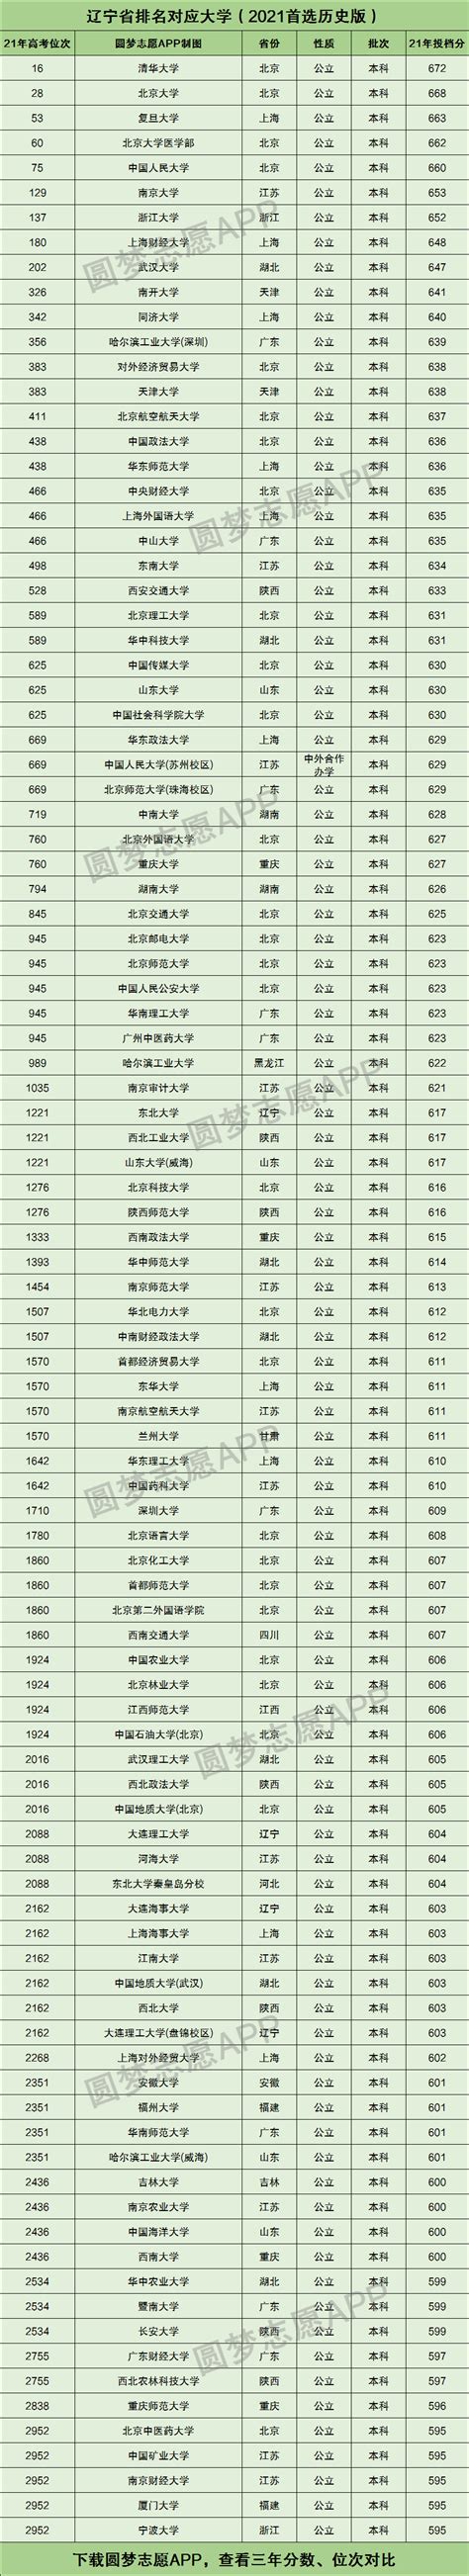 辽宁省2022高考排名查询